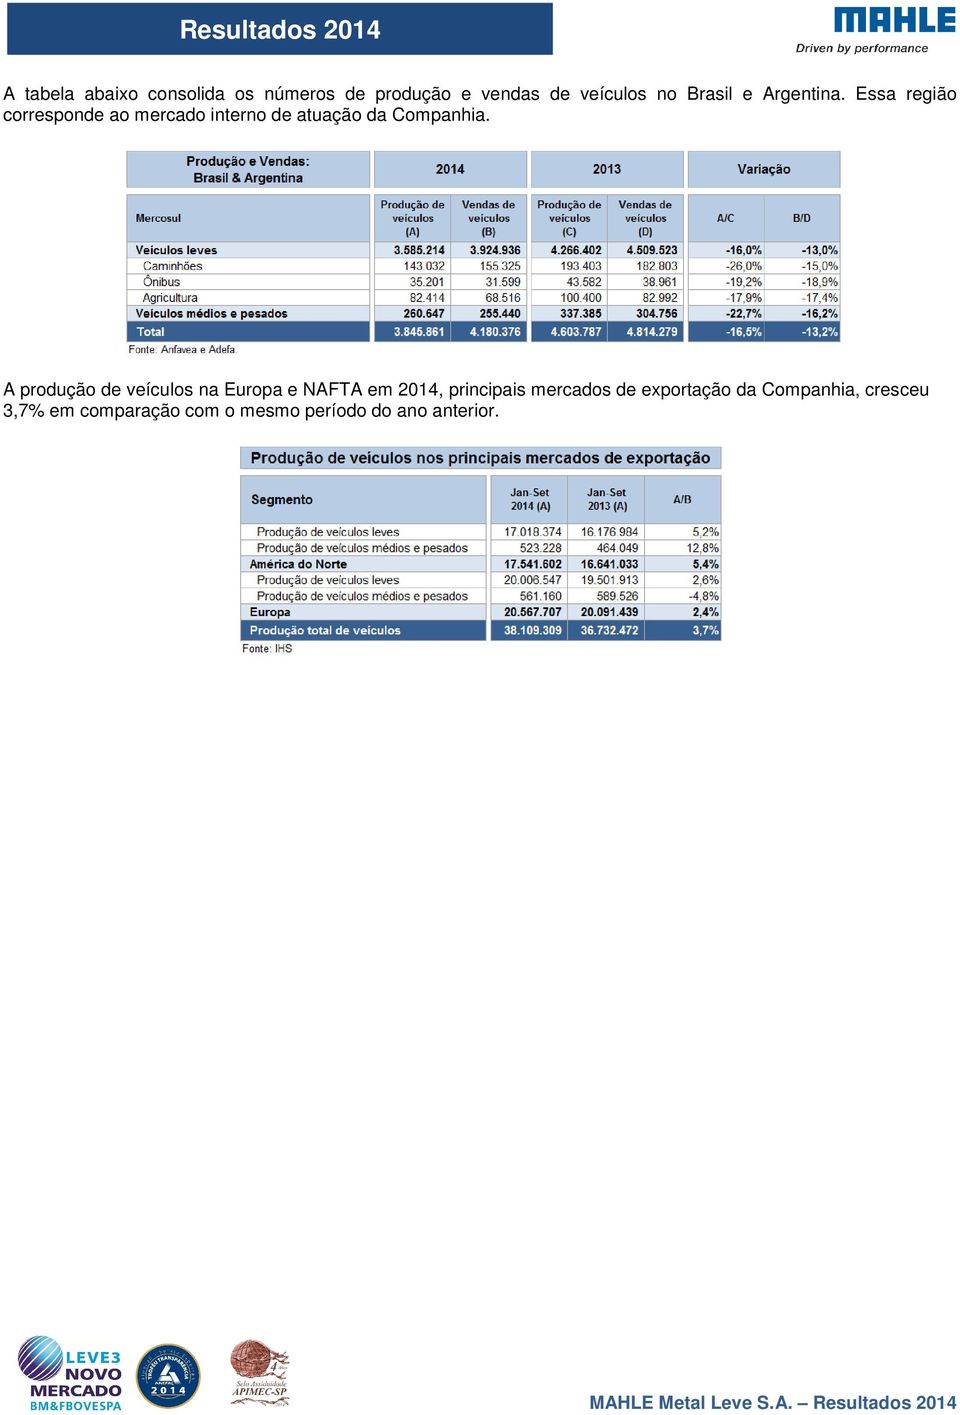 A produção de veículos na Europa e NAFTA em 2014, principais mercados de